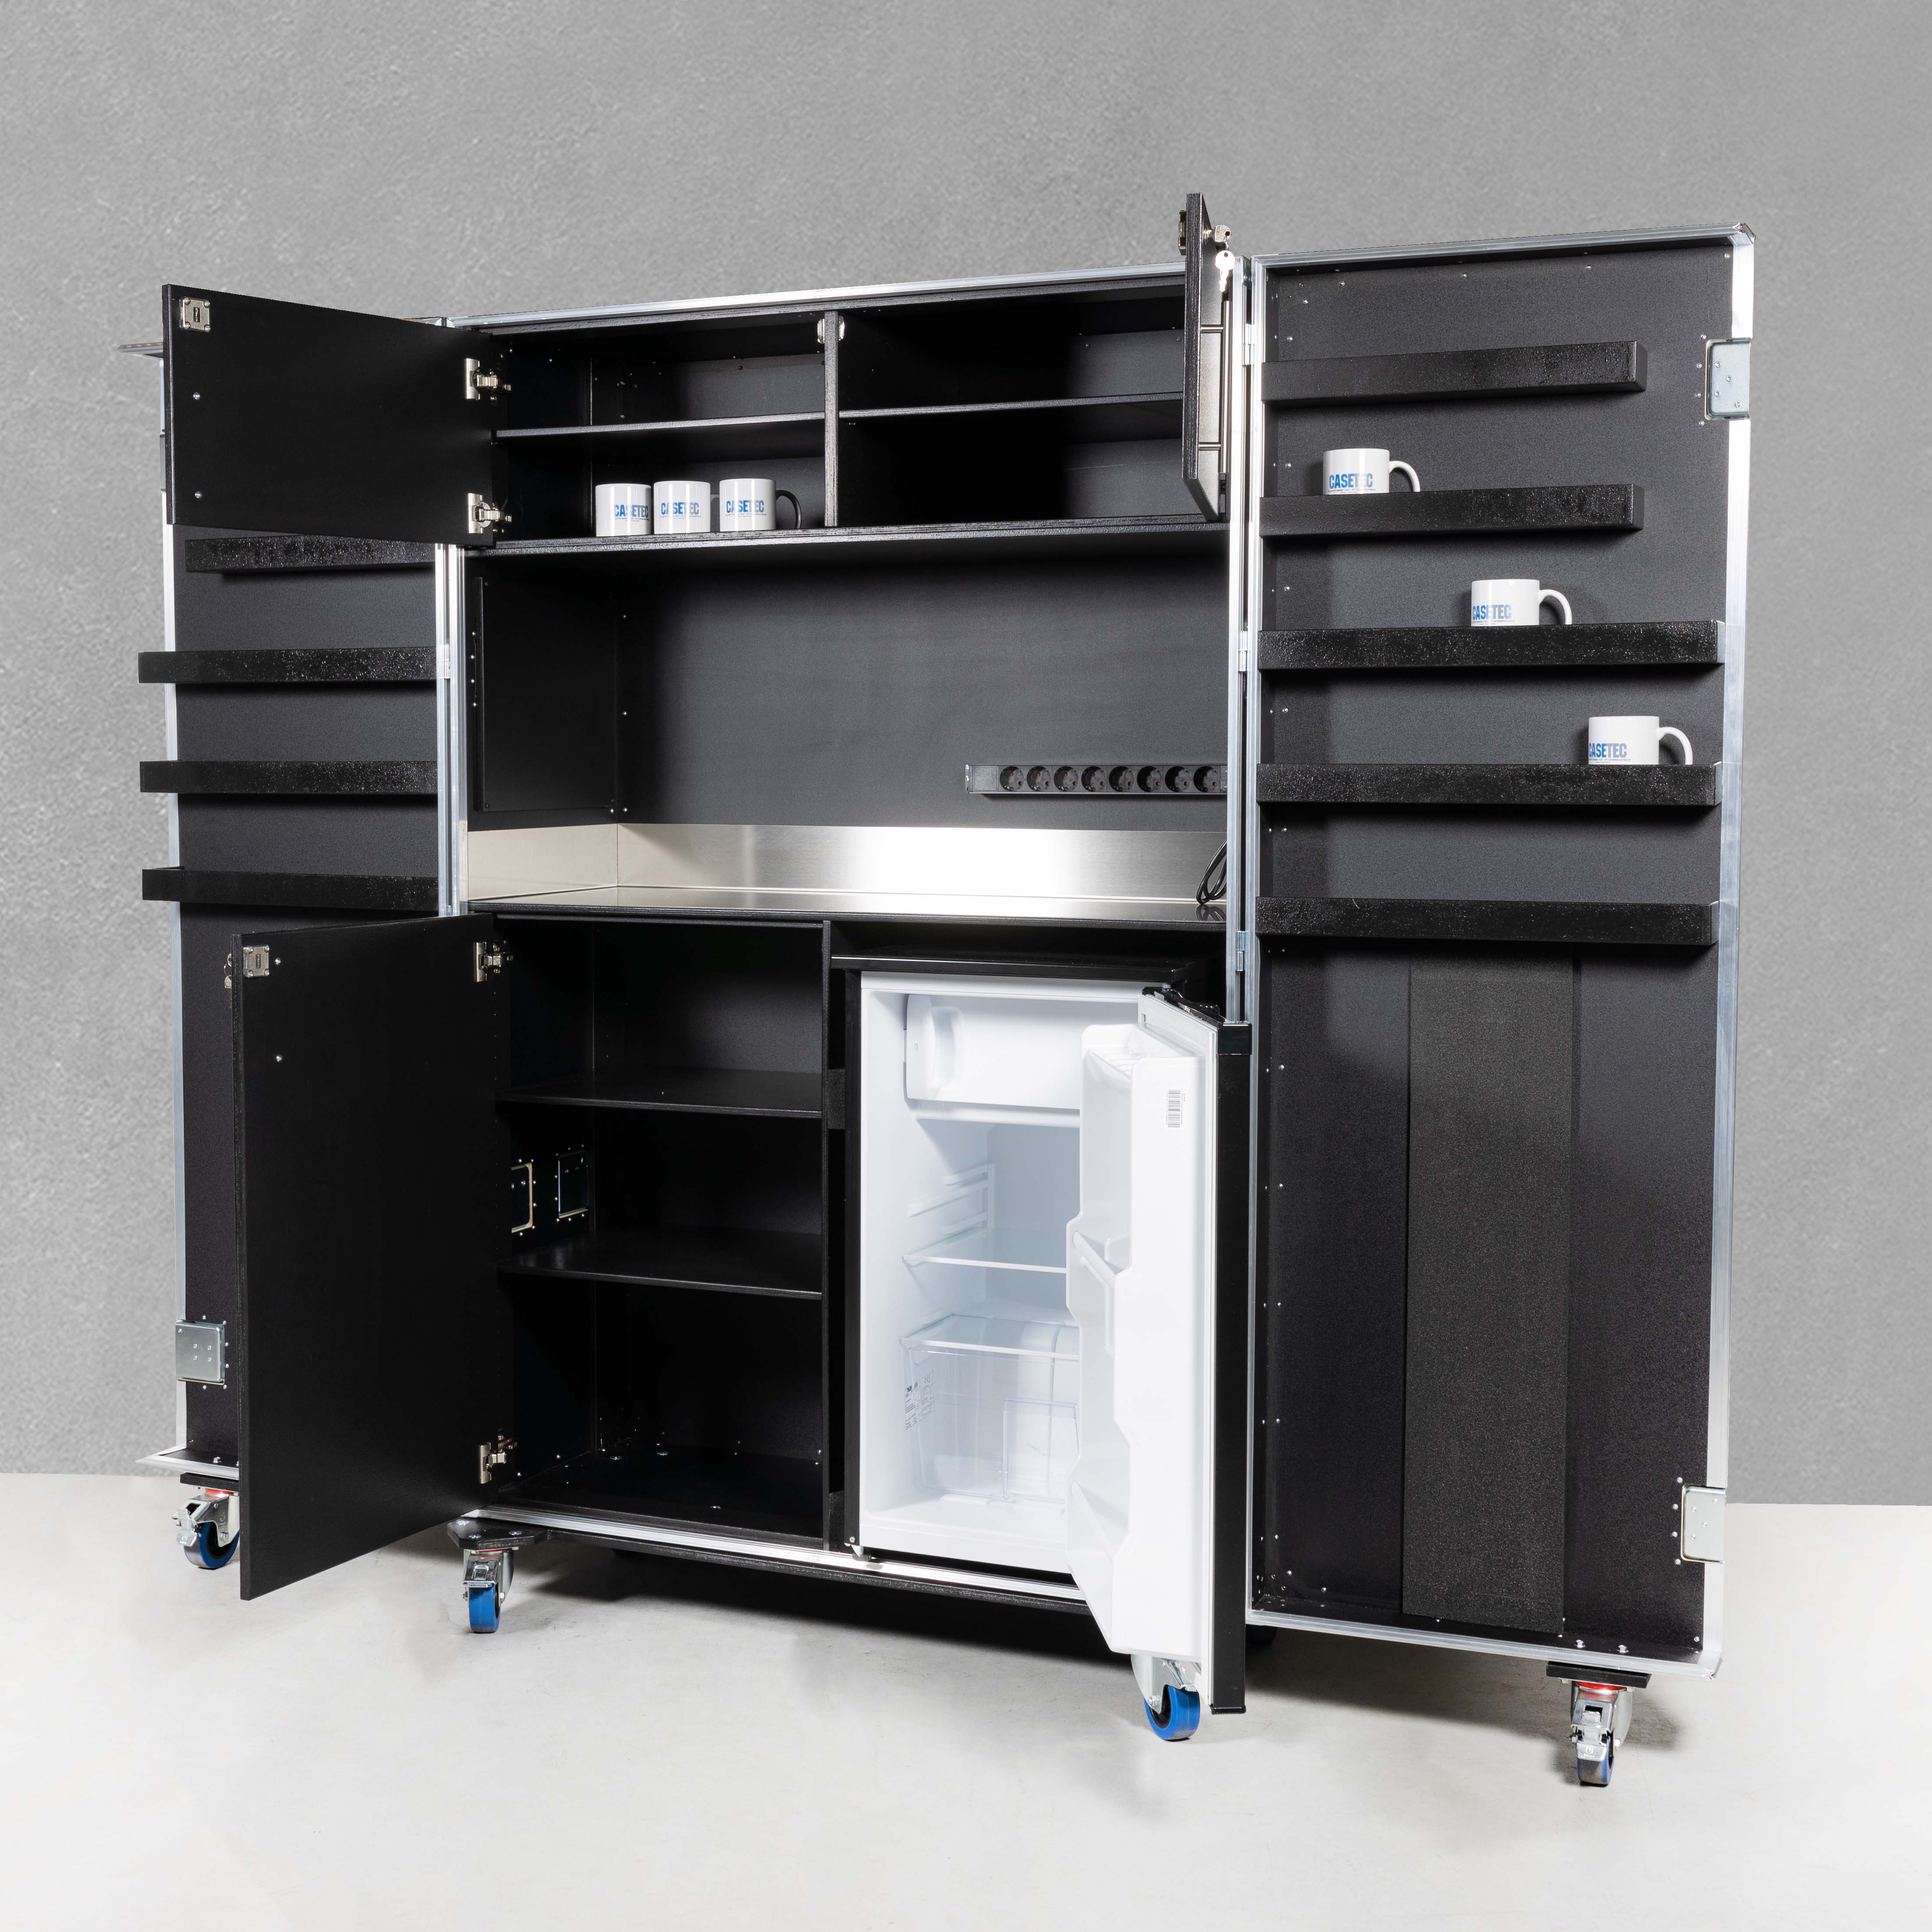 Küchencase/Cateringcase mit Edelstahlarbeitsfläche und Kühlschrankfach